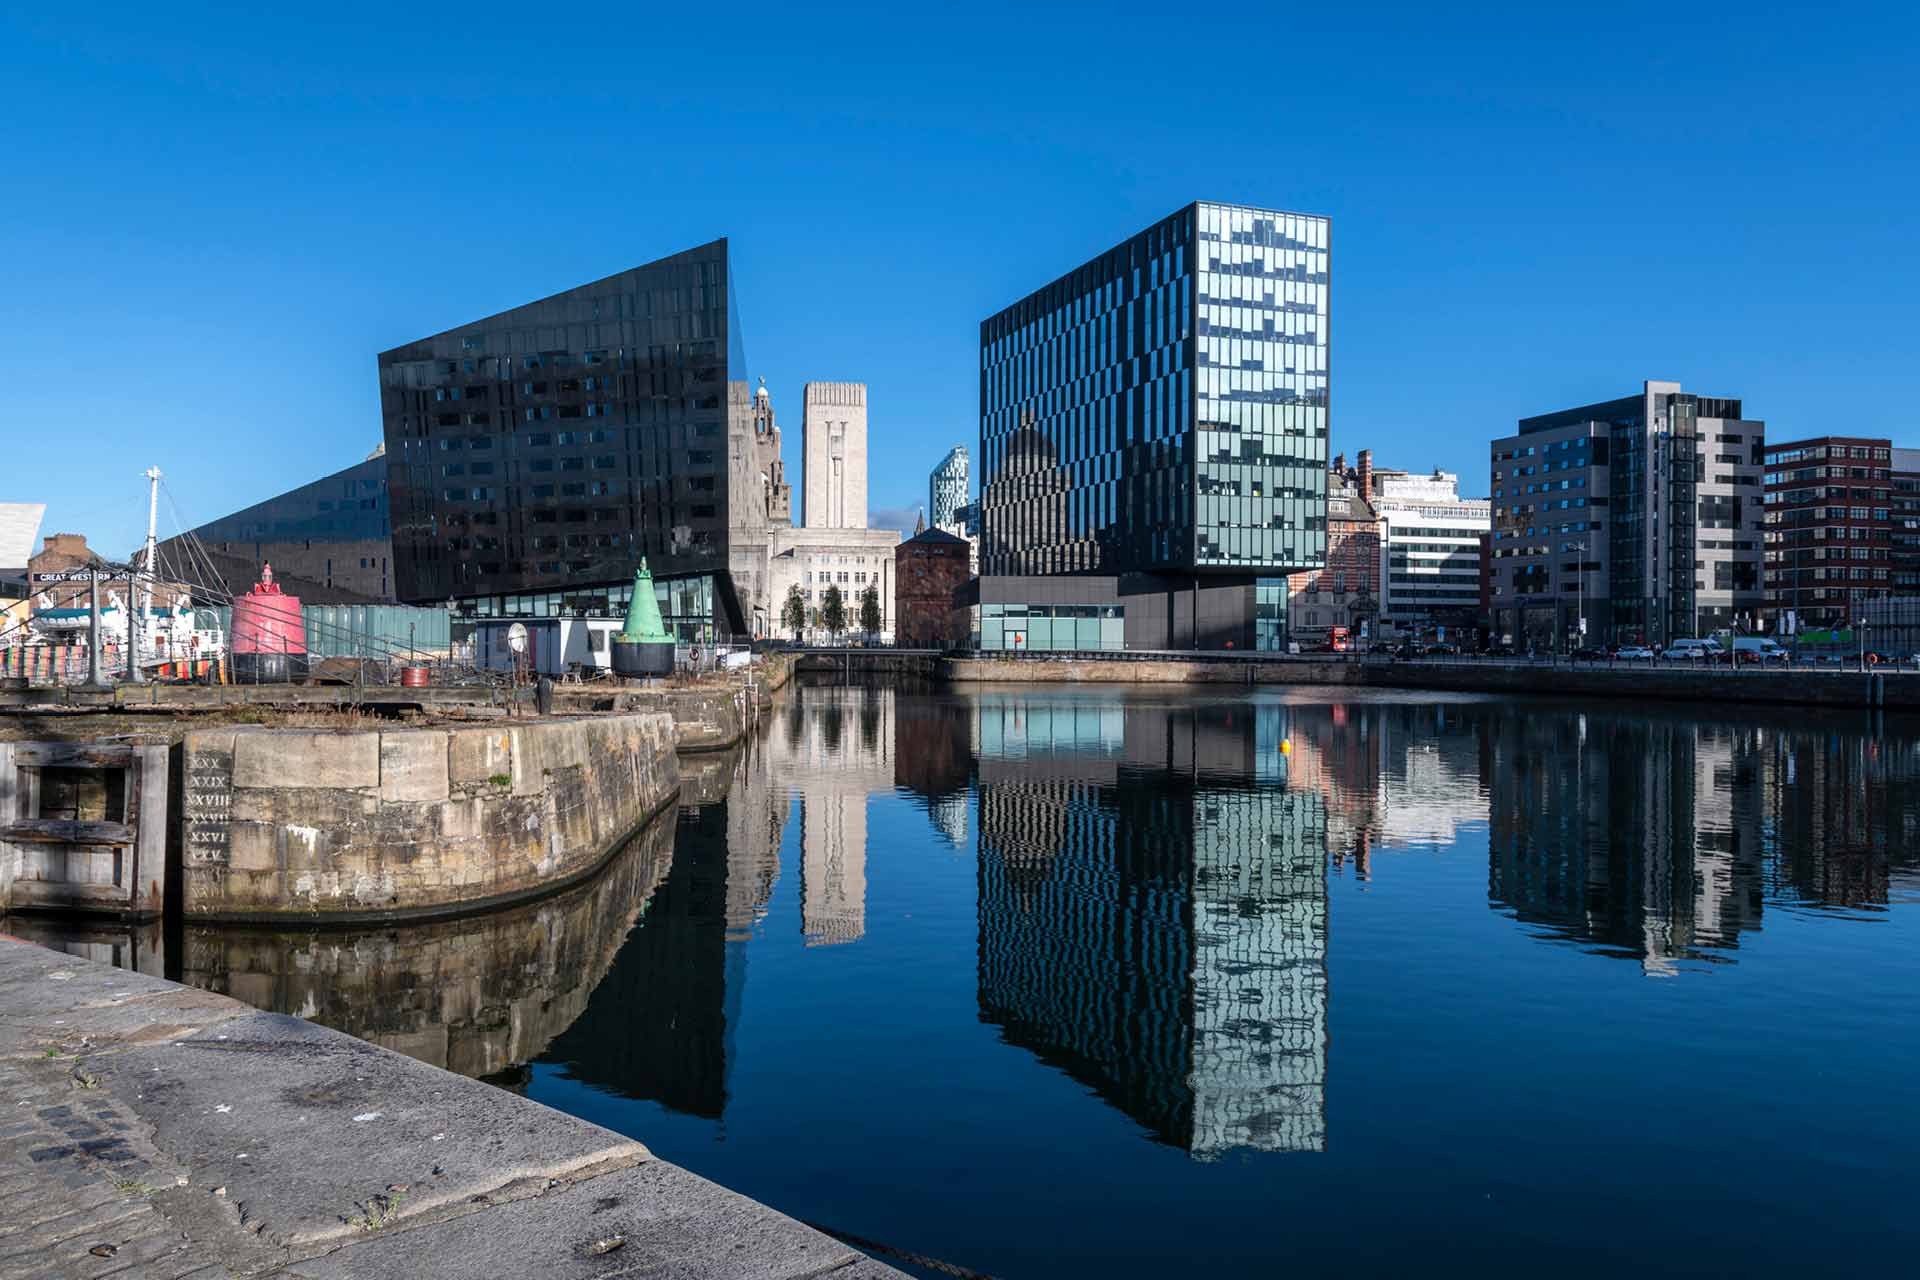 Image of Liverpool's Albert Dock